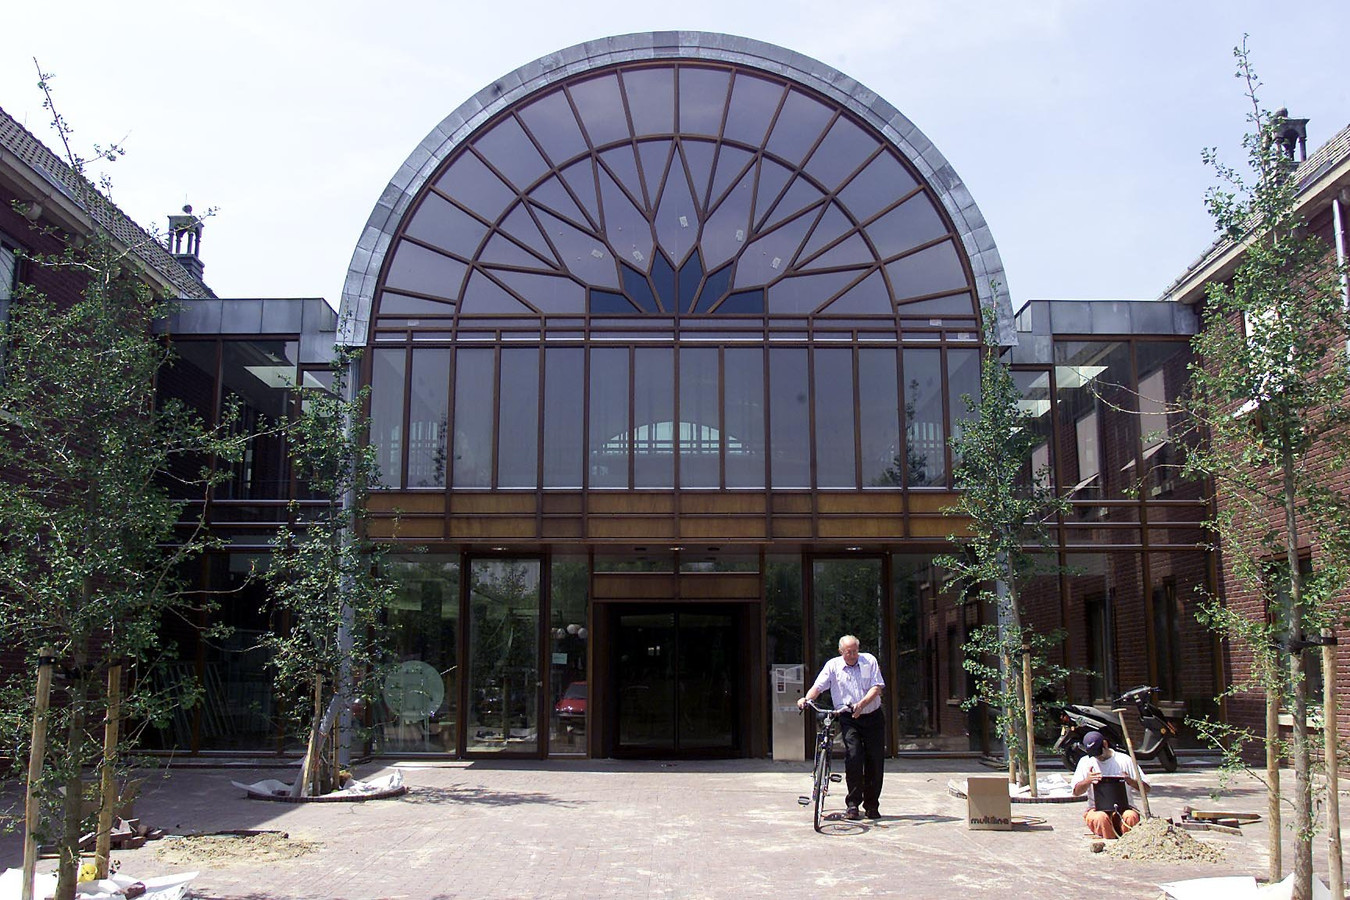 De entree van het gemeentehuis in HeezeLeende (archieffoto)